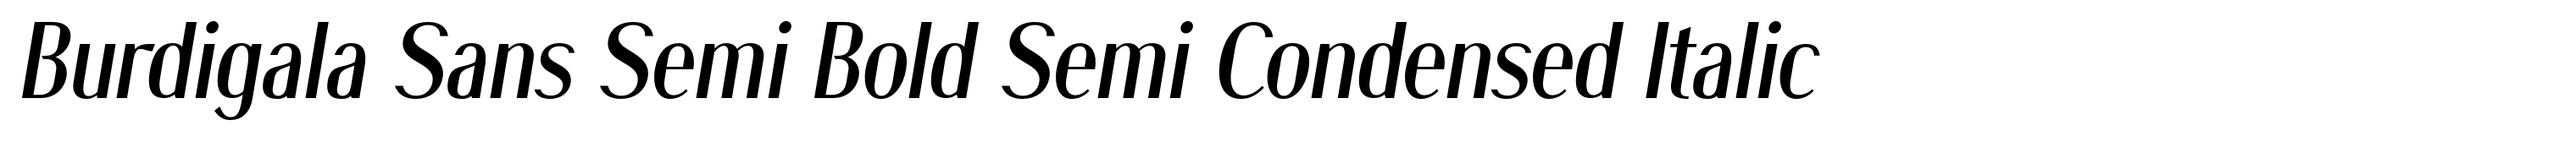 Burdigala Sans Semi Bold Semi Condensed Italic